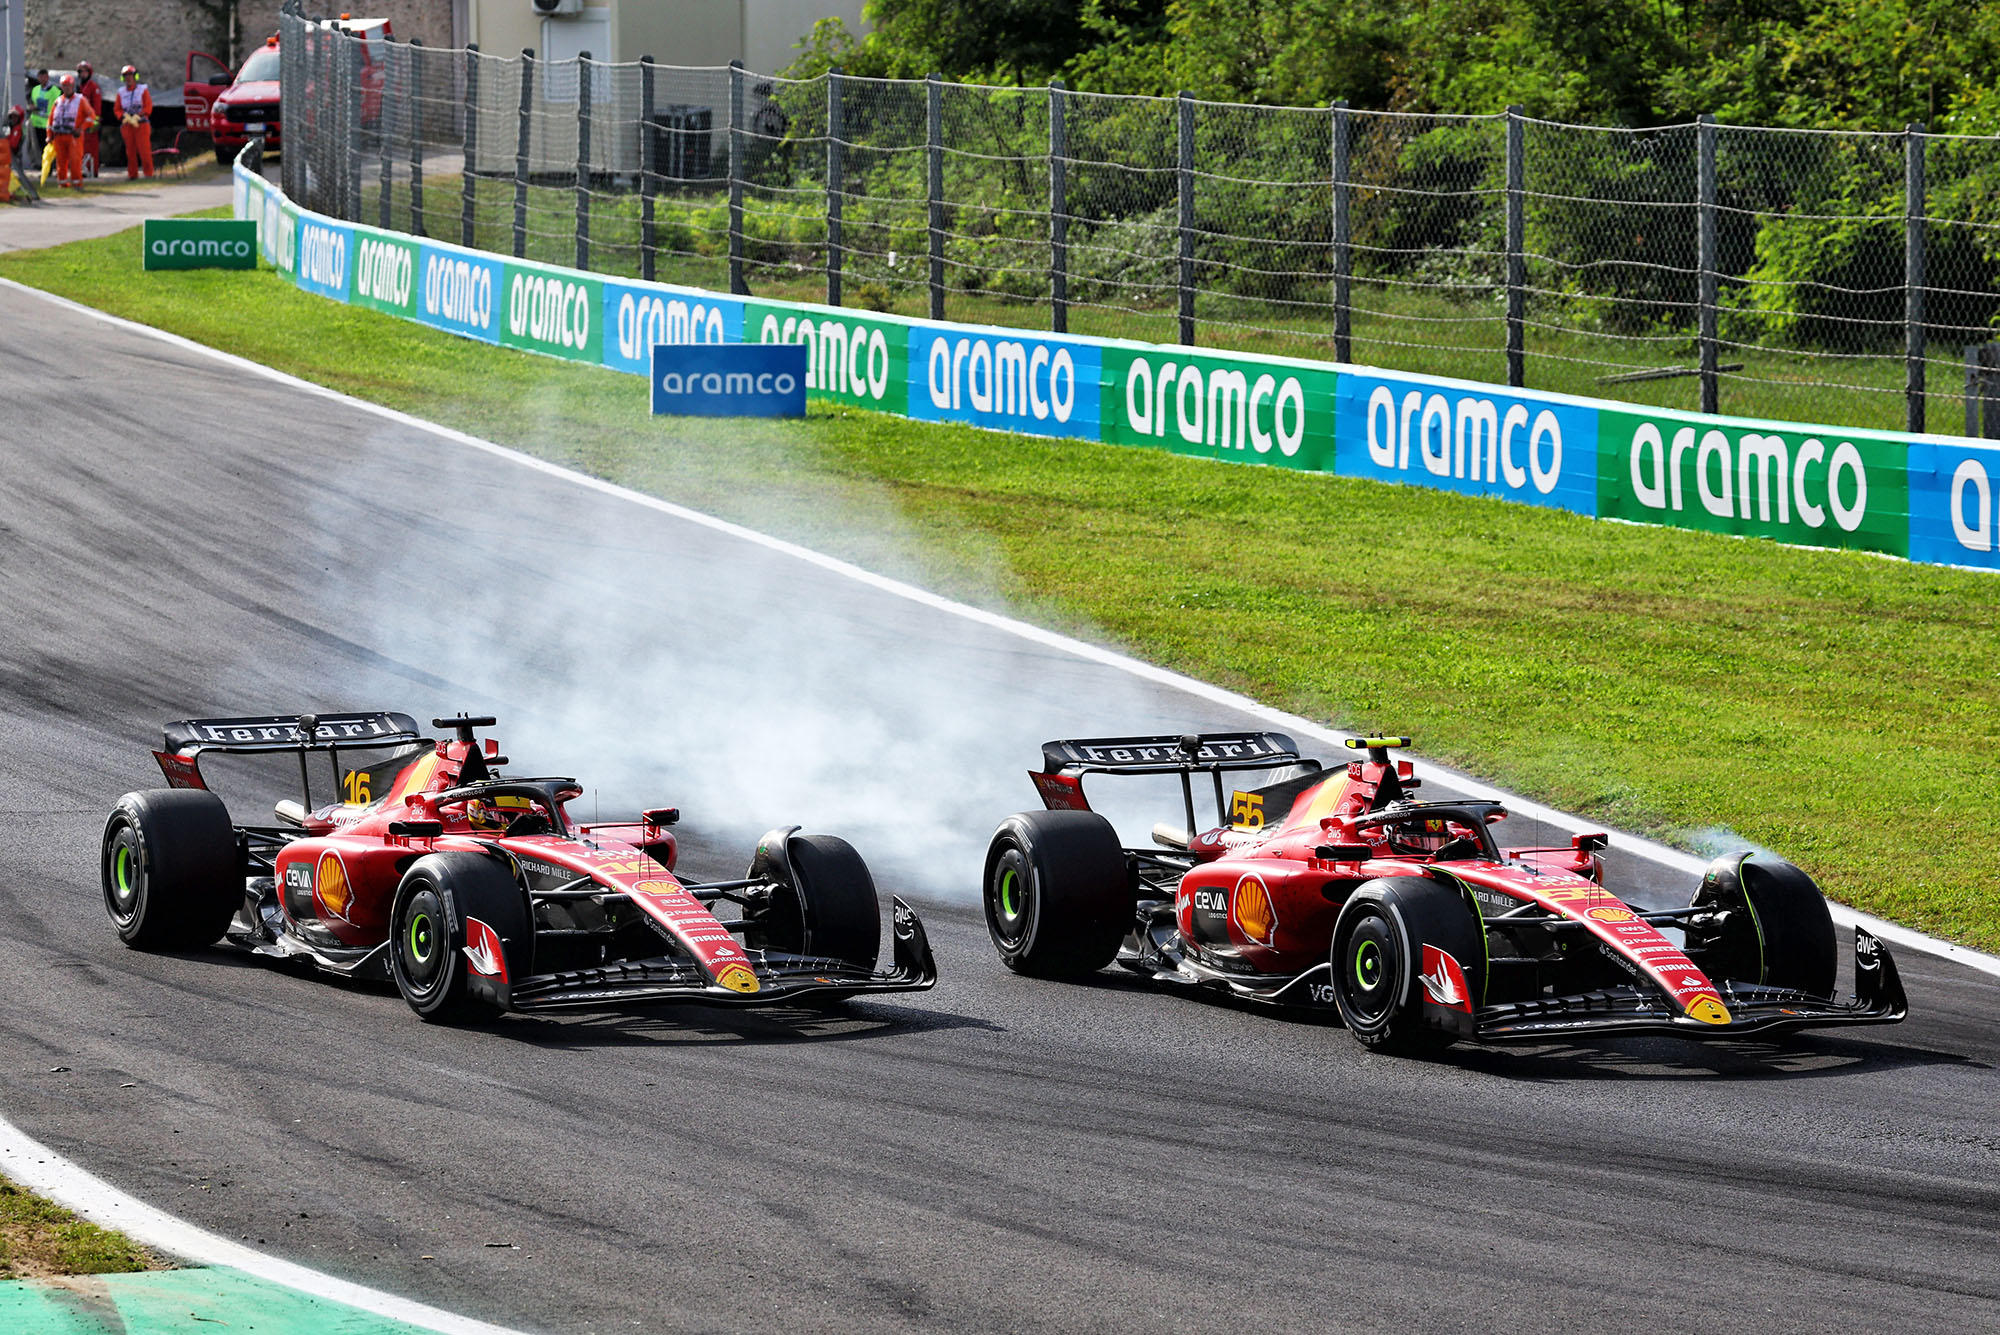 Our verdict on Ferrari’s heroic but futile Monza victory bid - The Race